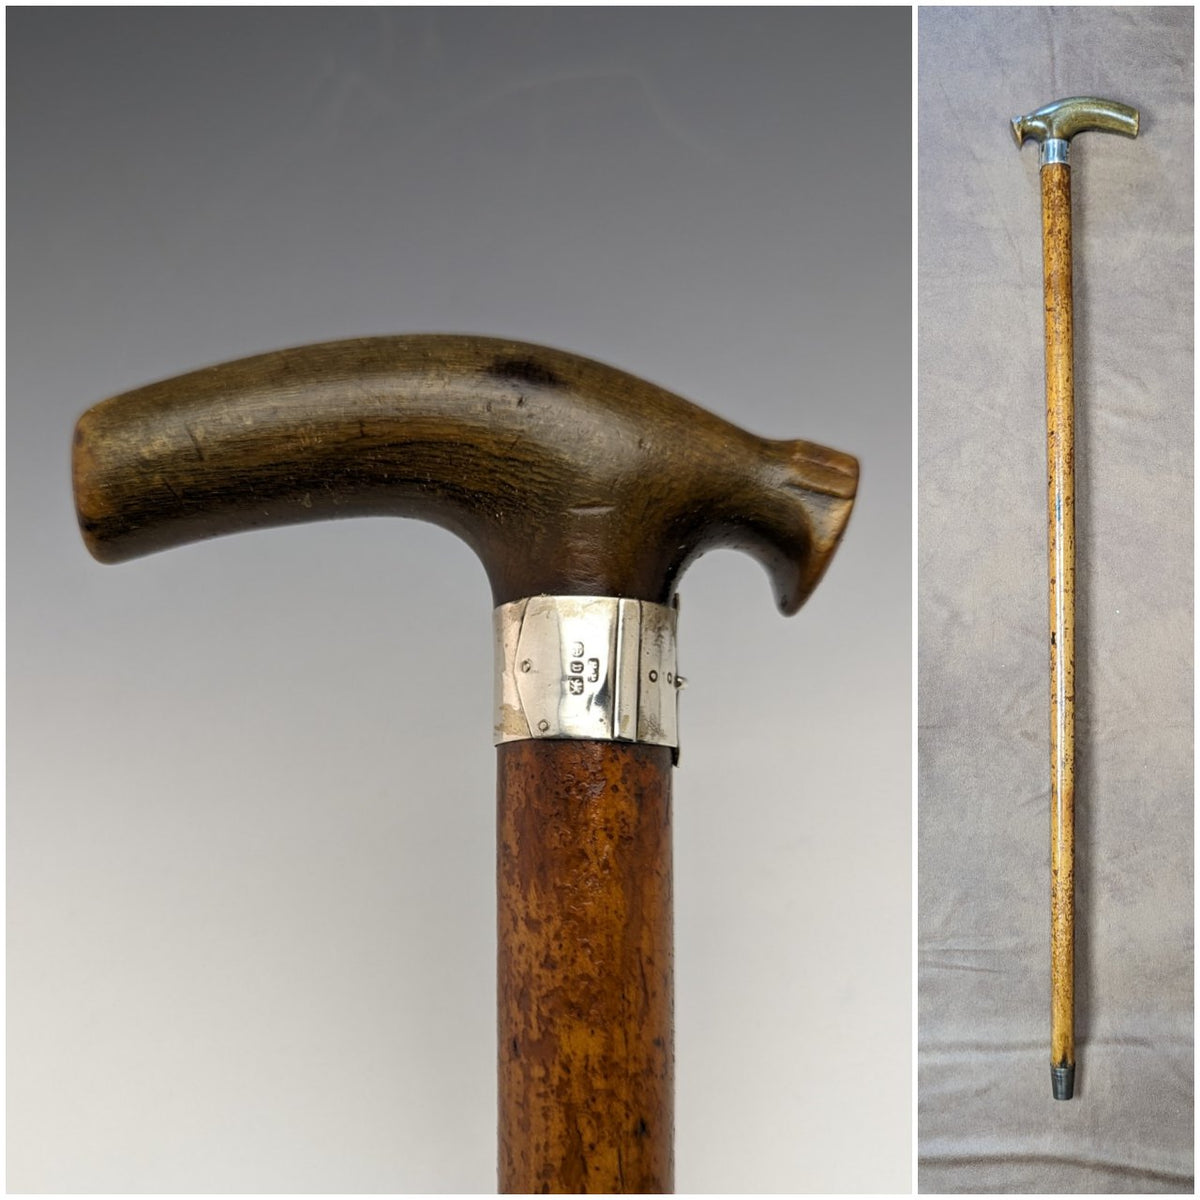 目立った傷や汚れのない美品機能1895年頃 英国アンティーク 紳士用ステッキ 鹿角クラッチハンドル ツイストシャフト 85cm